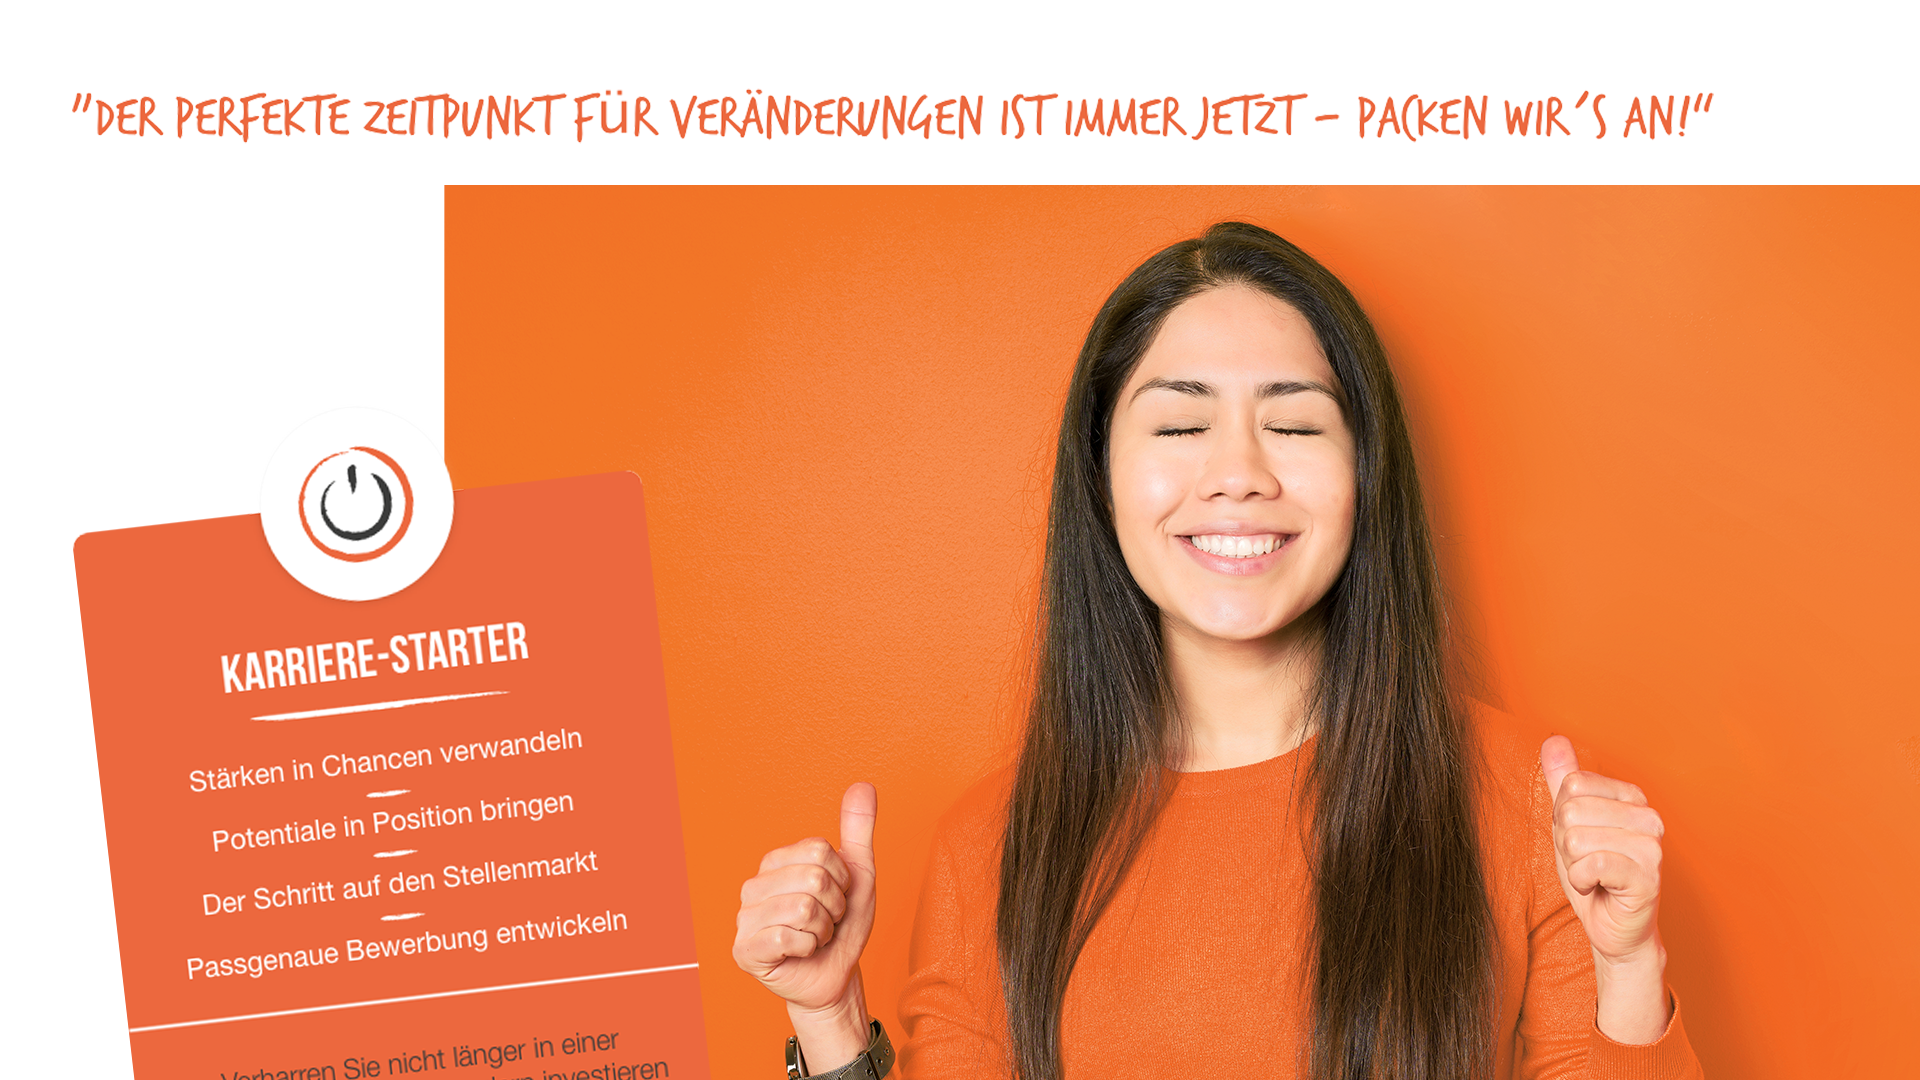 Scribble Werbeagentur nah bei Mönchengladbach zeigt eine Frau die meint, dass jetzt der perfekte Zeitpunkt zur Veränderung ist. 